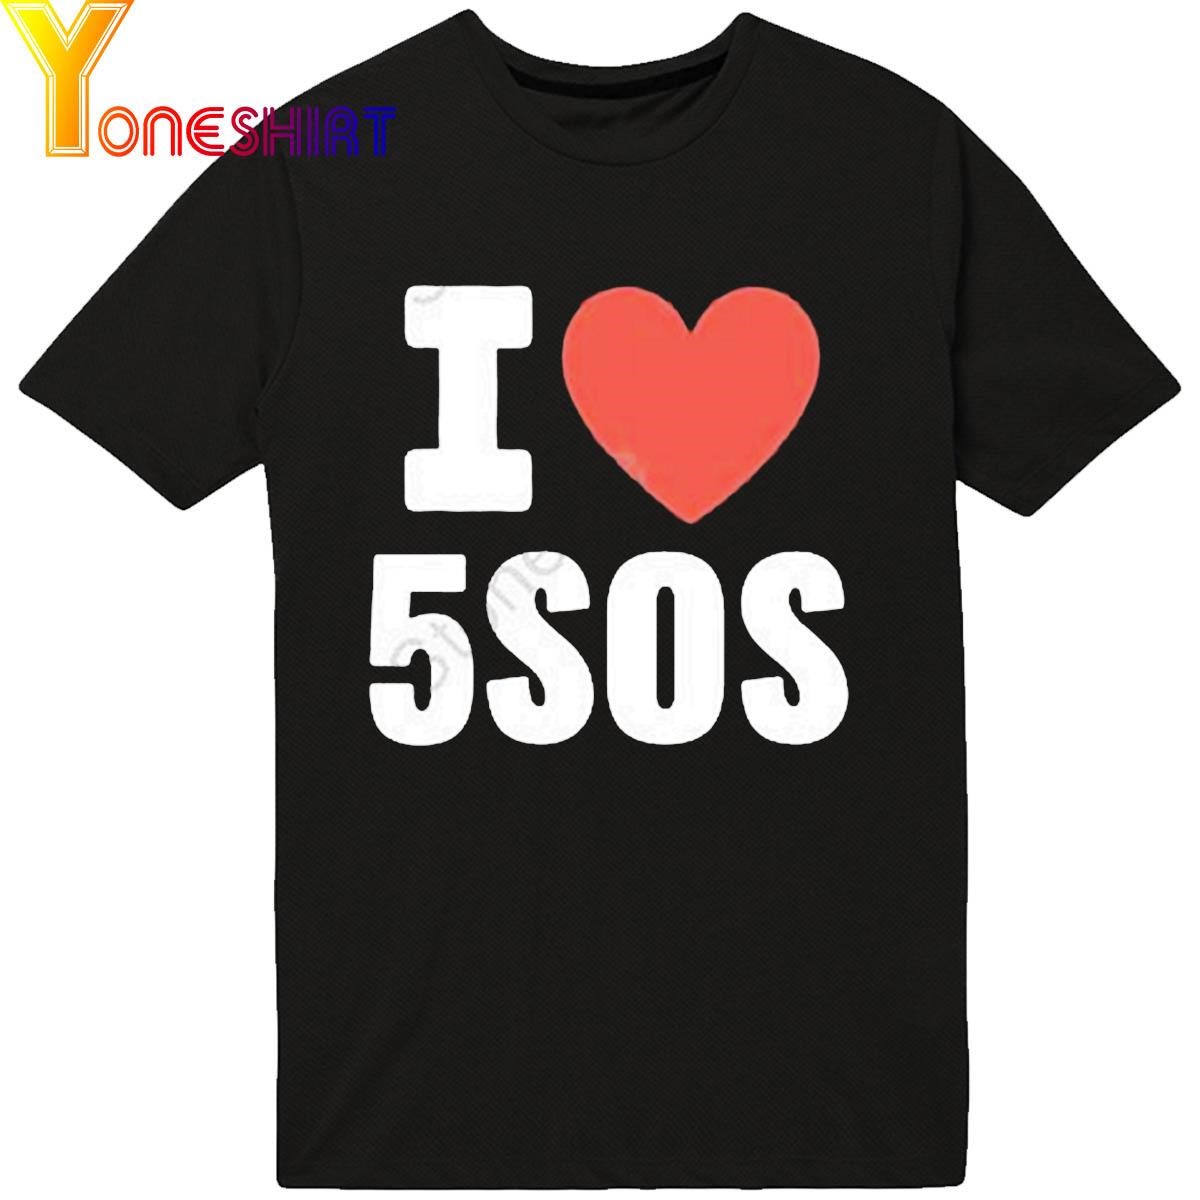 I Love 5Sos Shirt